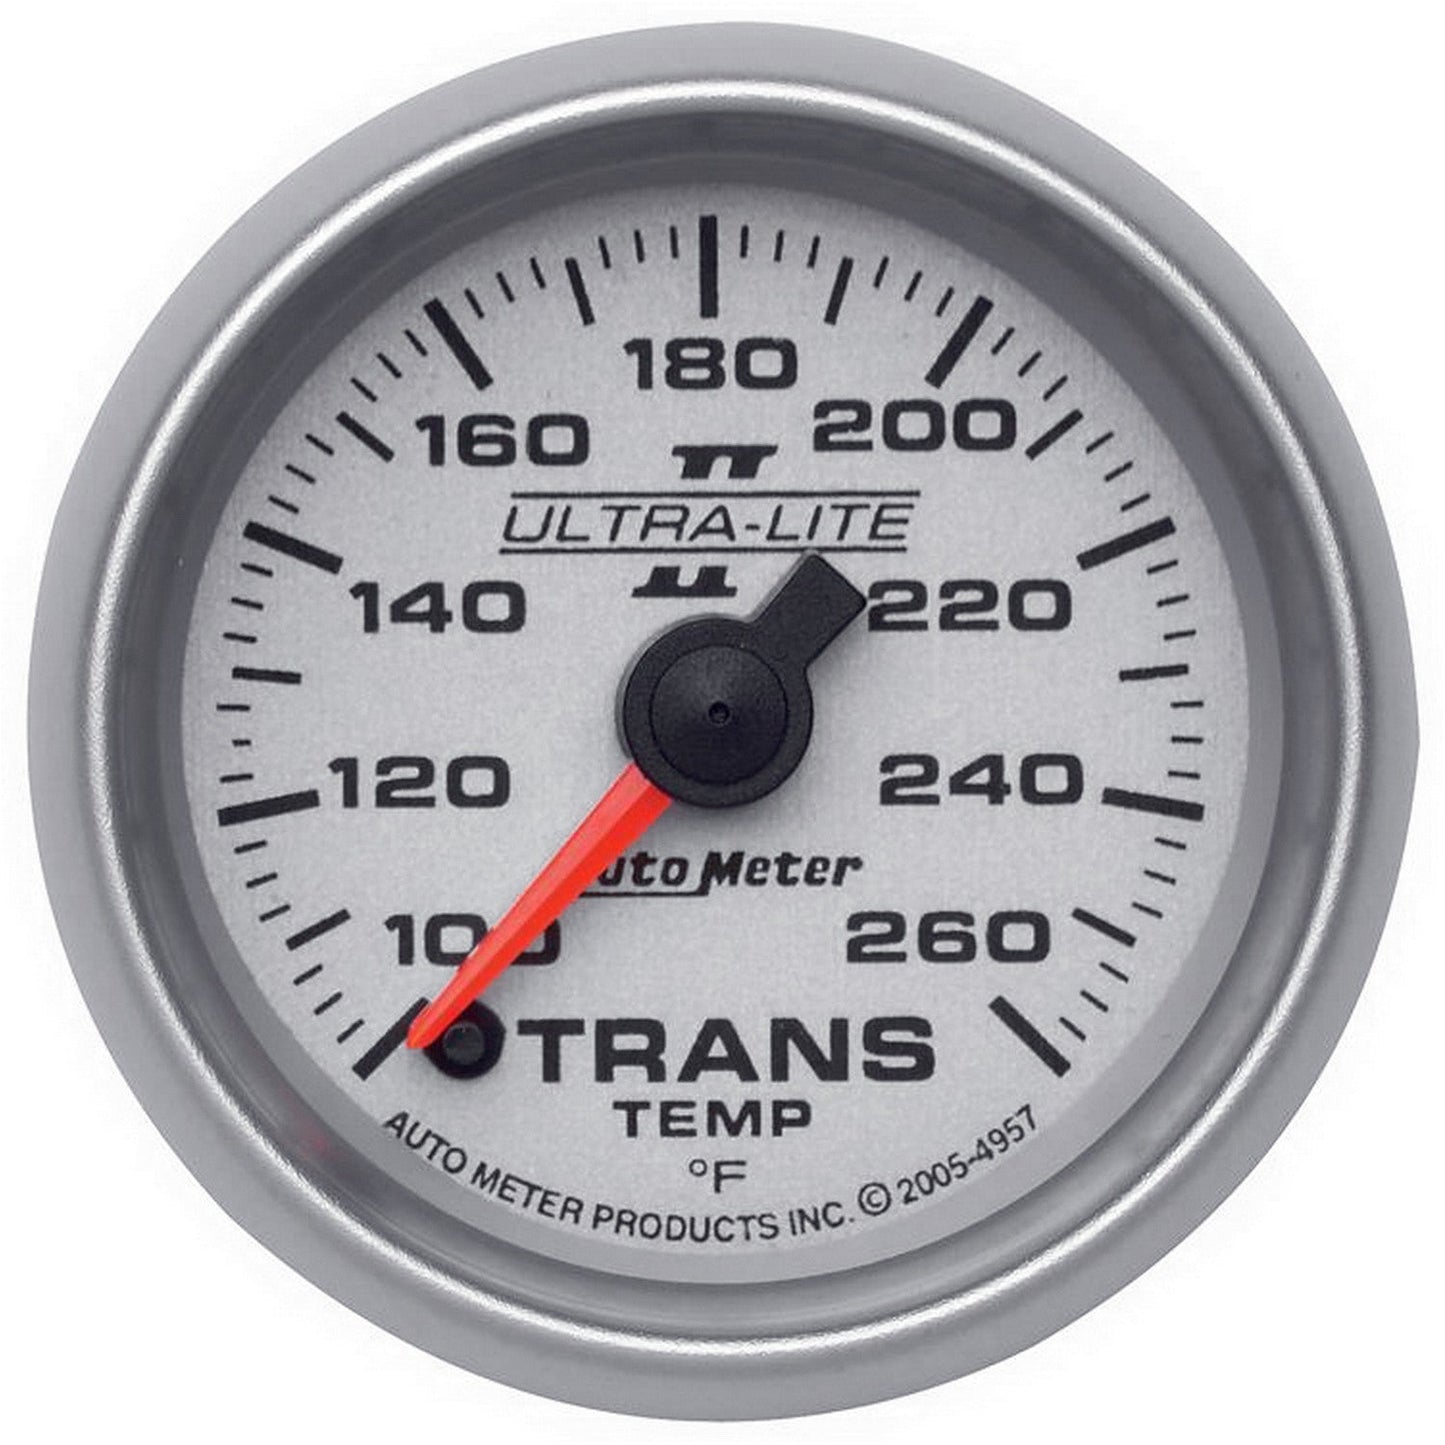 AutoMeter - 2-1/16" TRANSMISSION TEMPERATURE, 100-260 °F, STEPPER MOTOR, ULTRA-LITE II (4957)